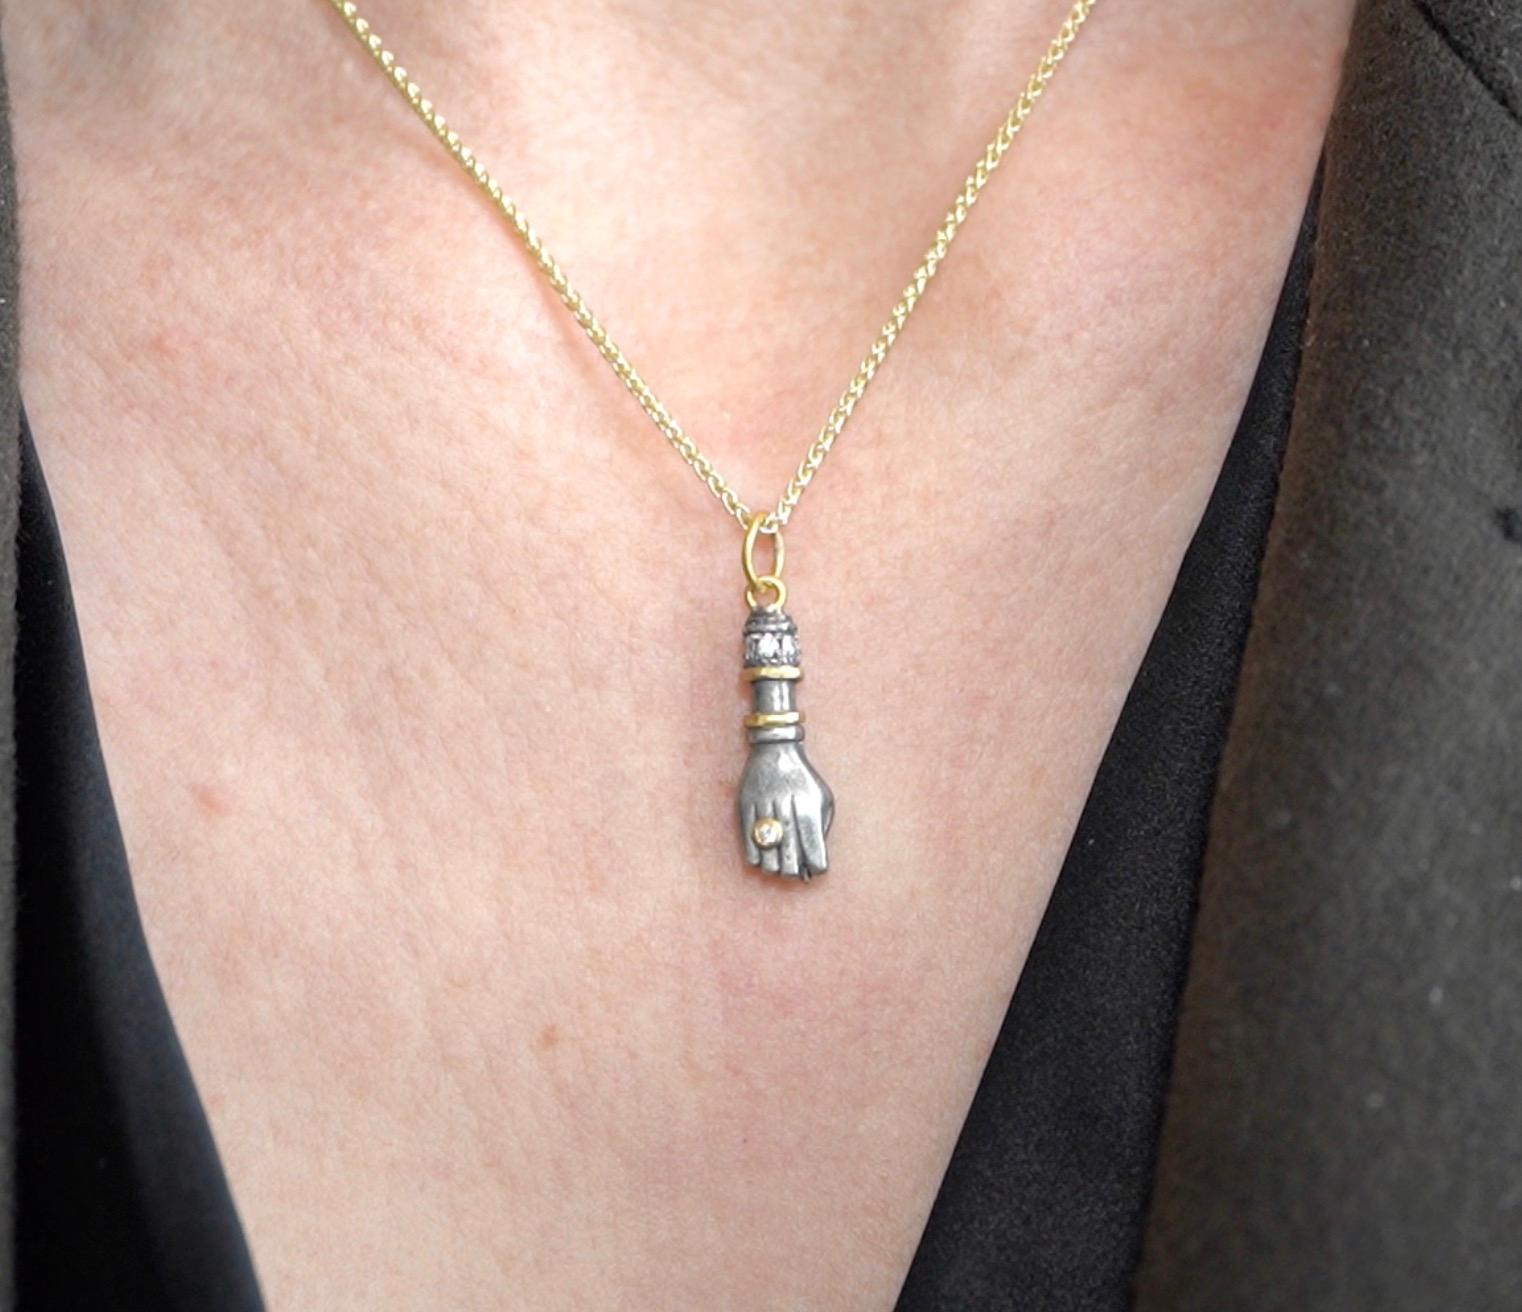 Figa Charm, pendentif collier Charm avec diamants, or et argent 24kt par Prehistoric Works of Istanbul, Turquie. Diamant - 0,02cts. Mesure 8mm x 24mm, livré avec une chaîne en vermeil de 16